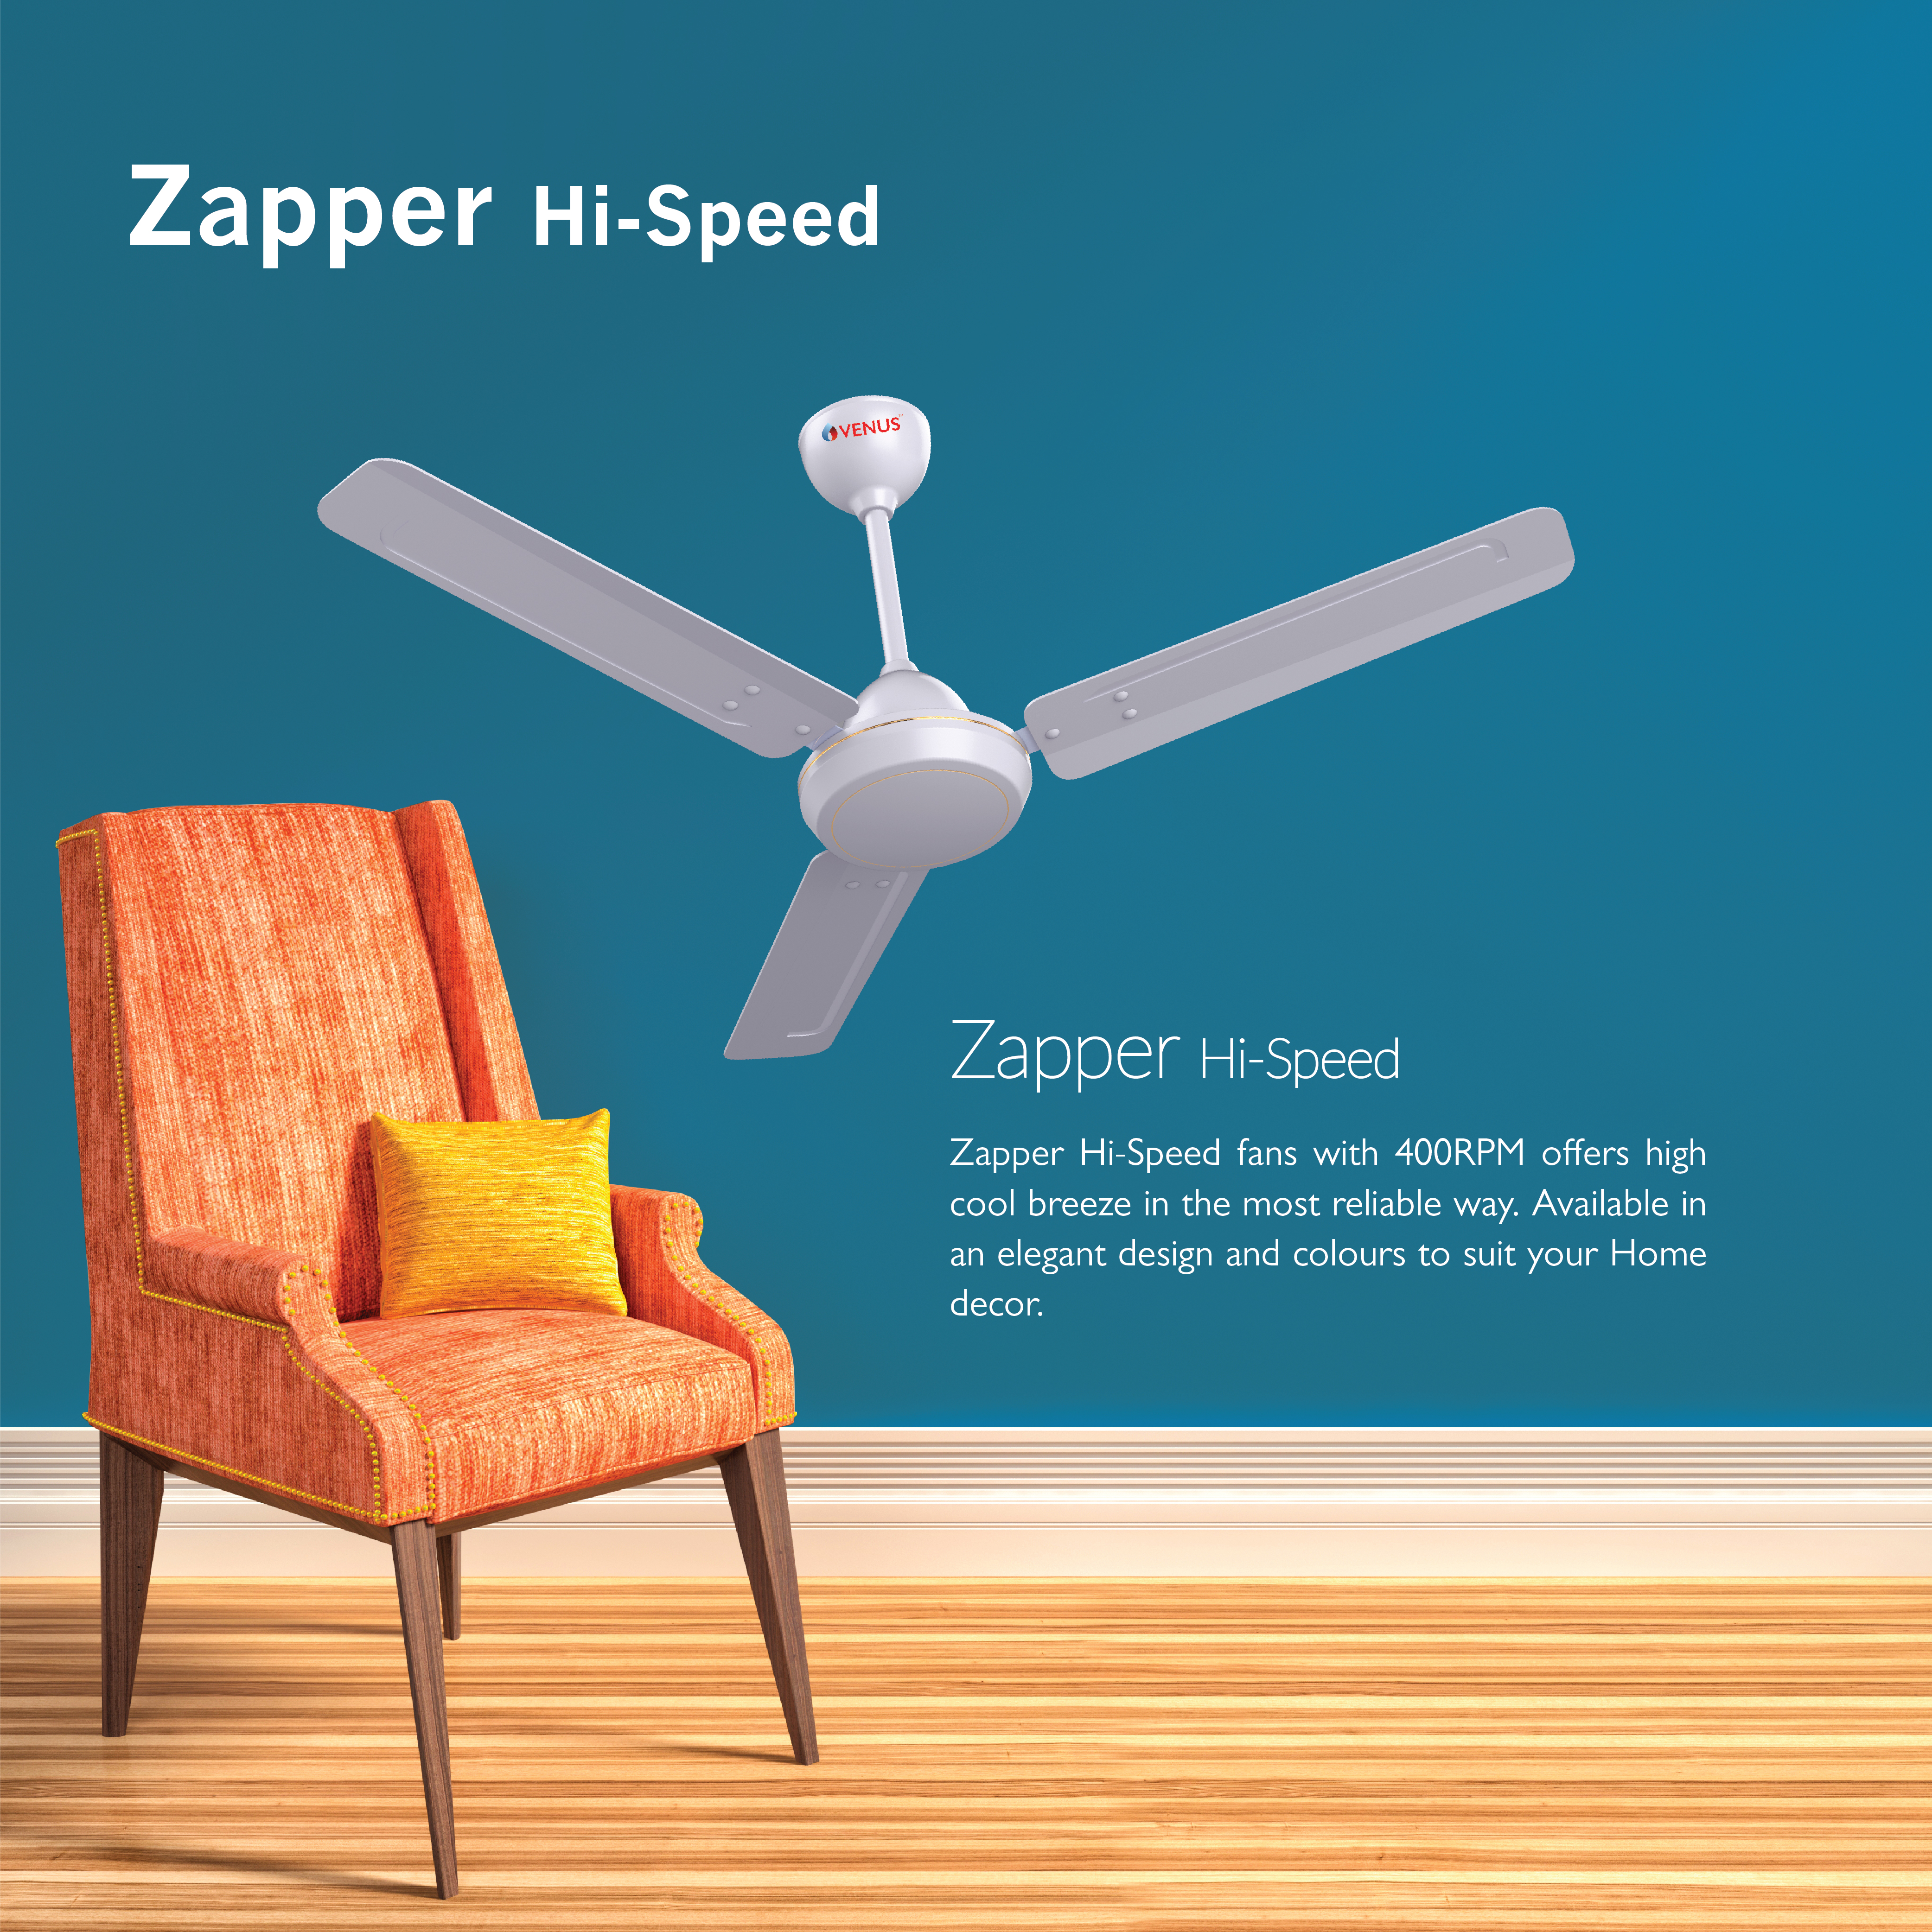 Zapper Hi-Speed